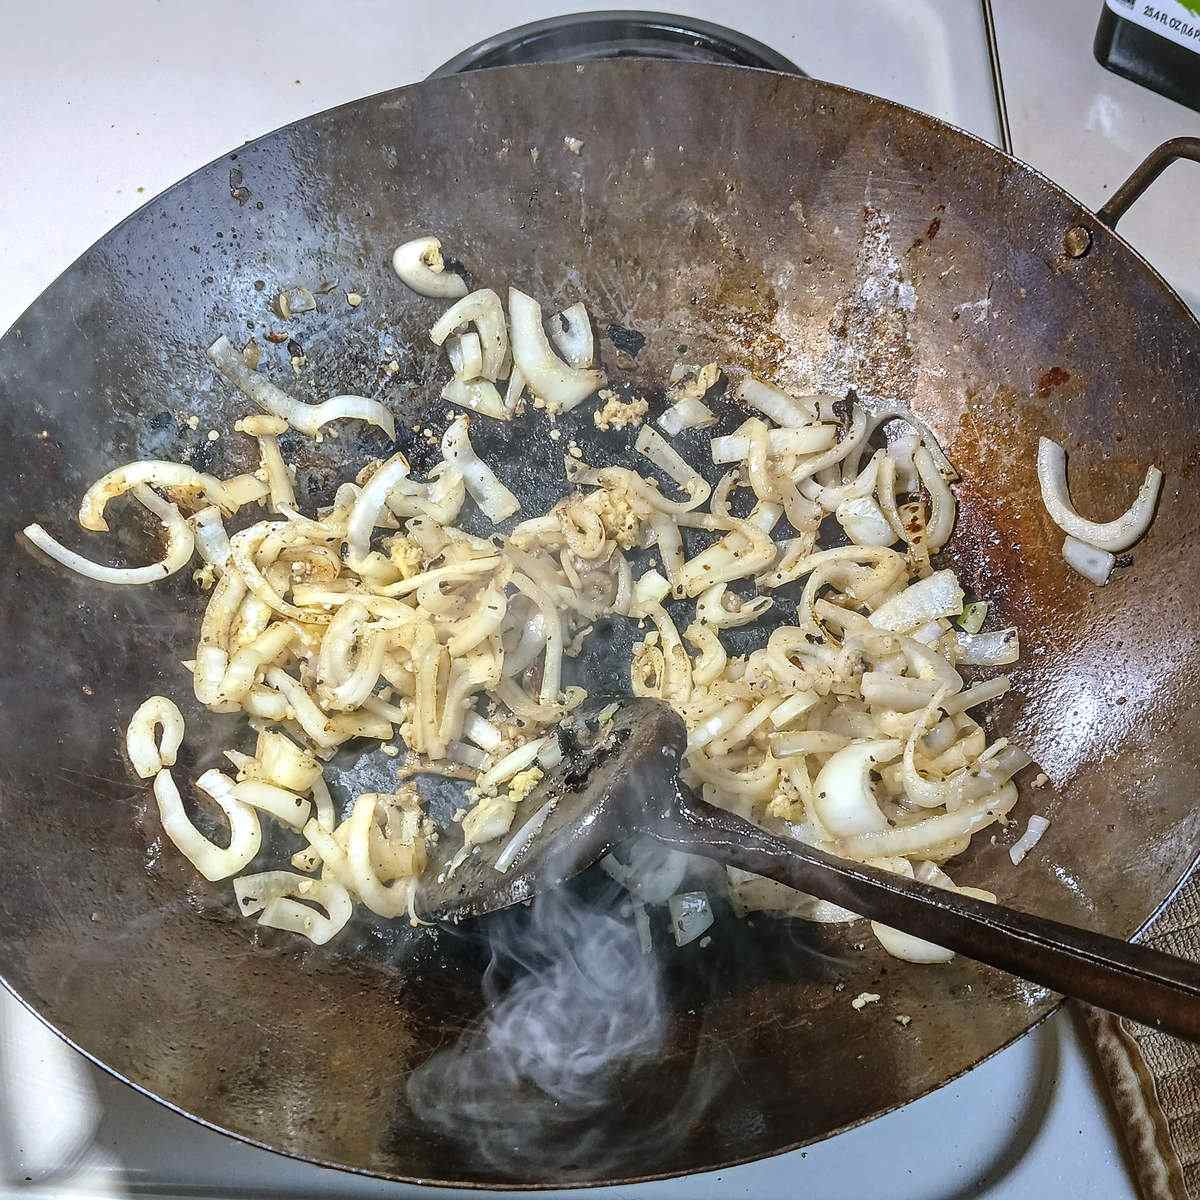 Low sodium chicken stir fry aromatics in wok.